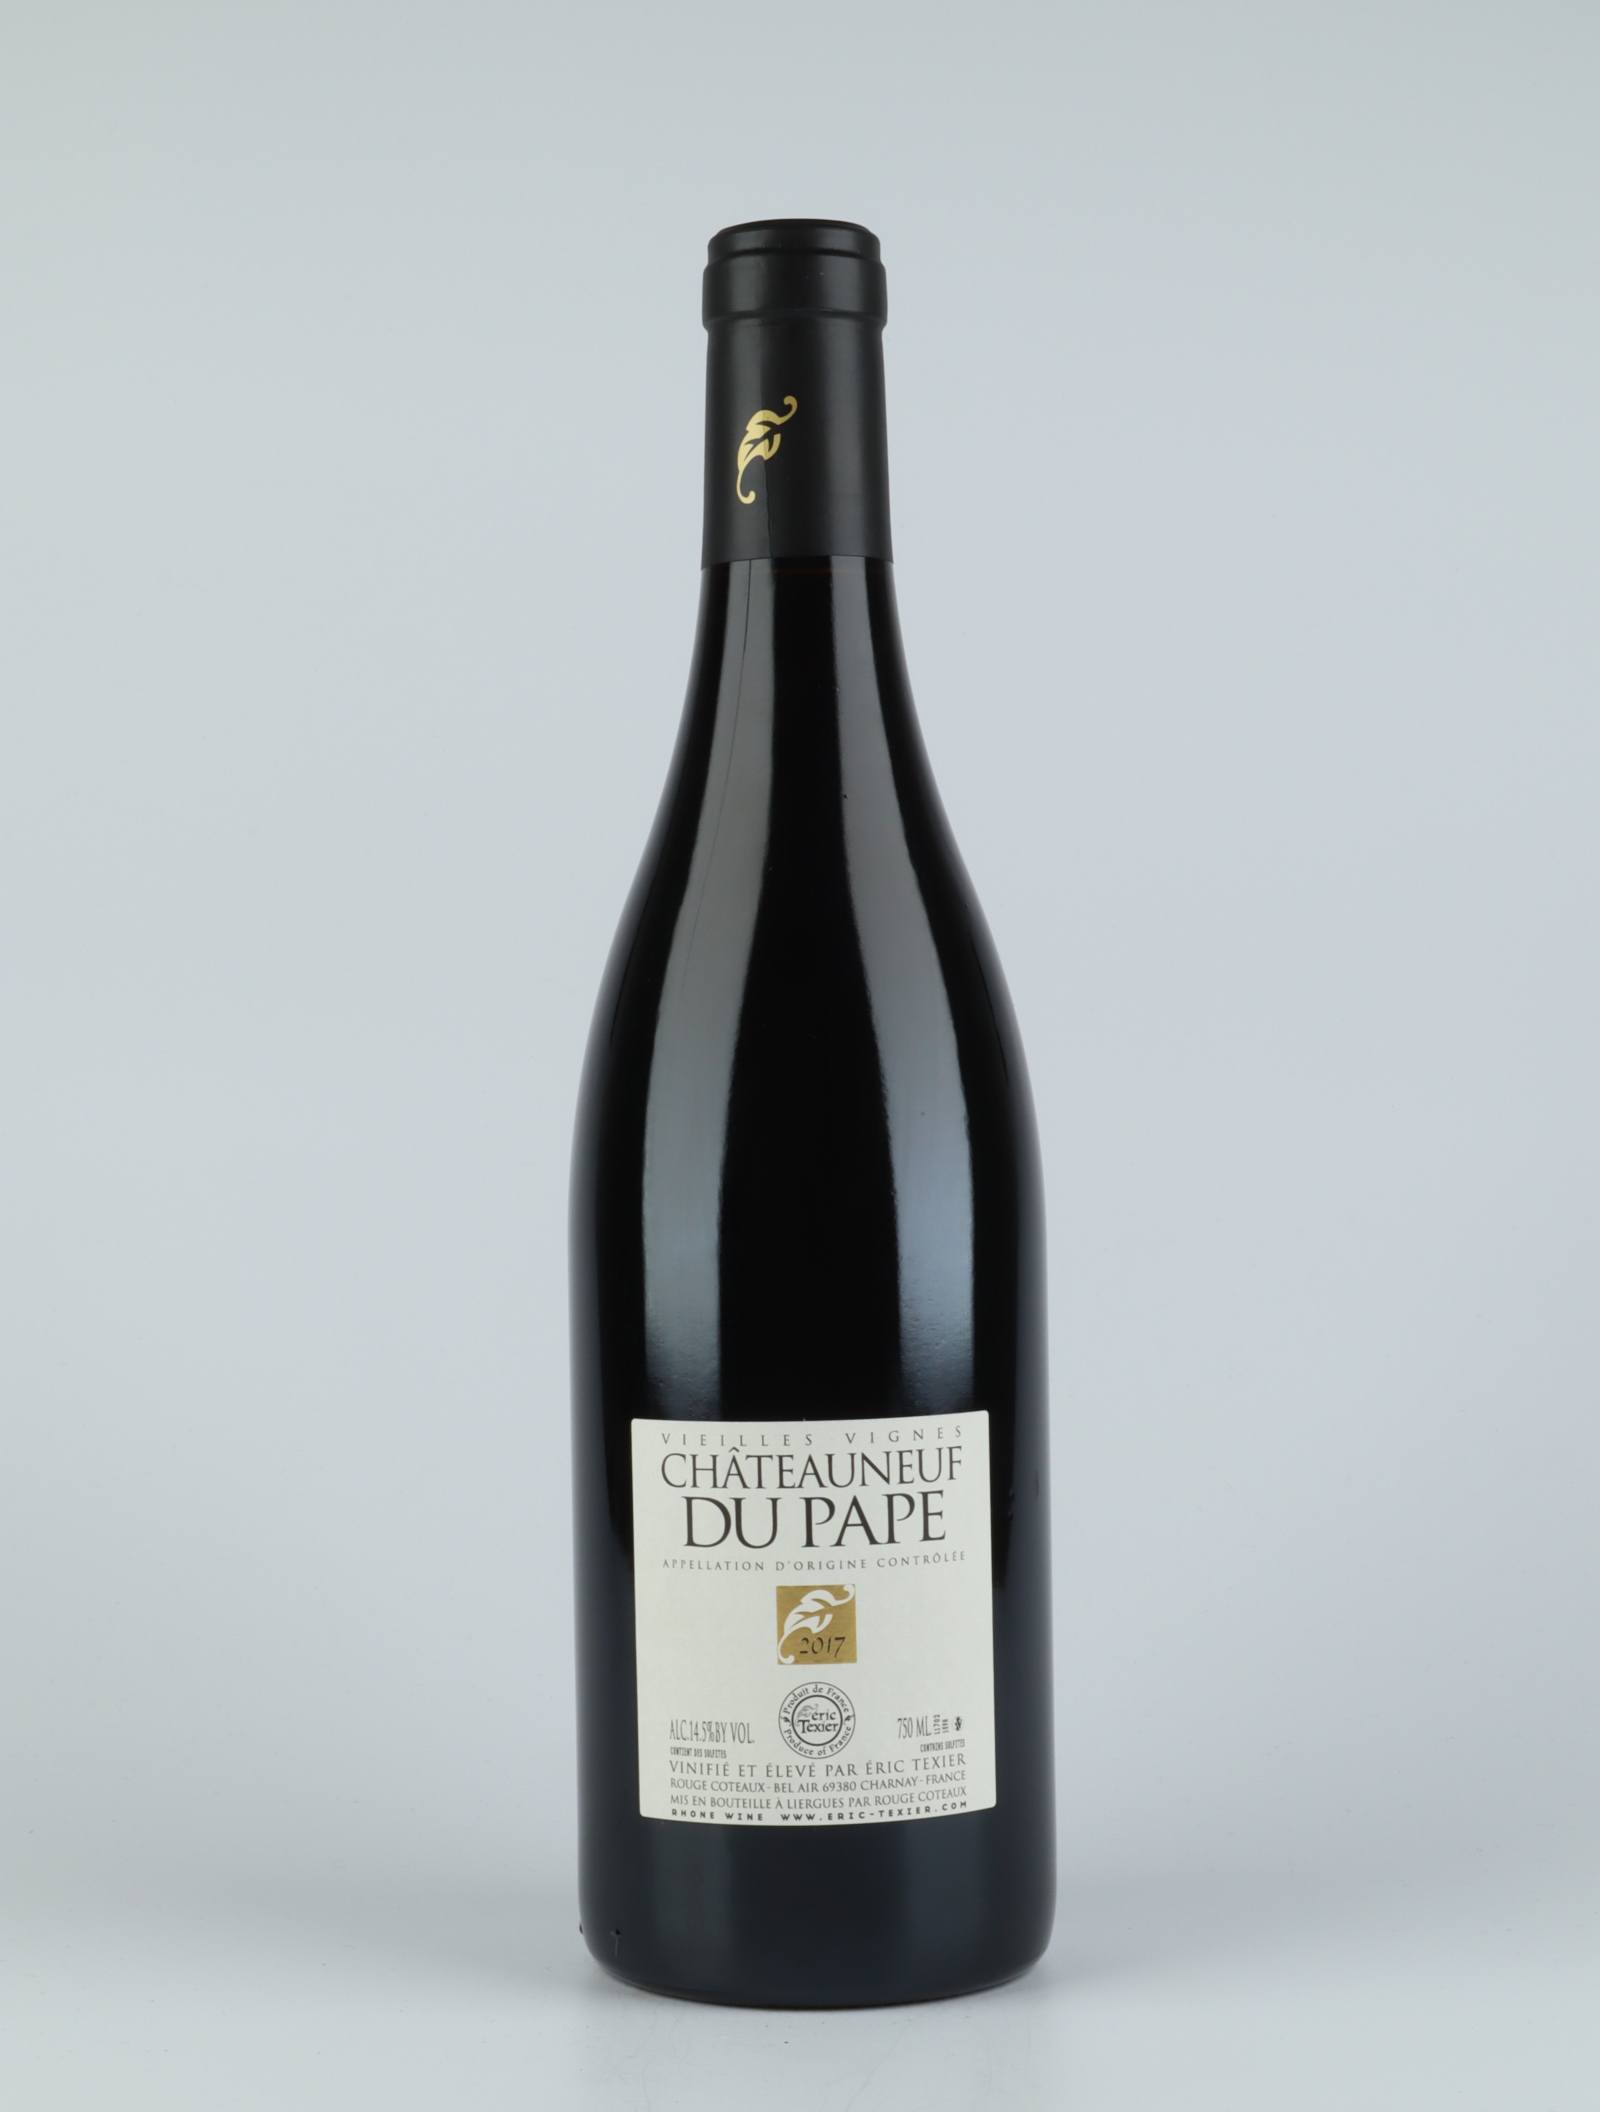 En flaske 2017 Châteauneuf-du-pape V.V. Rødvin fra Eric Texier, Rhône i Frankrig